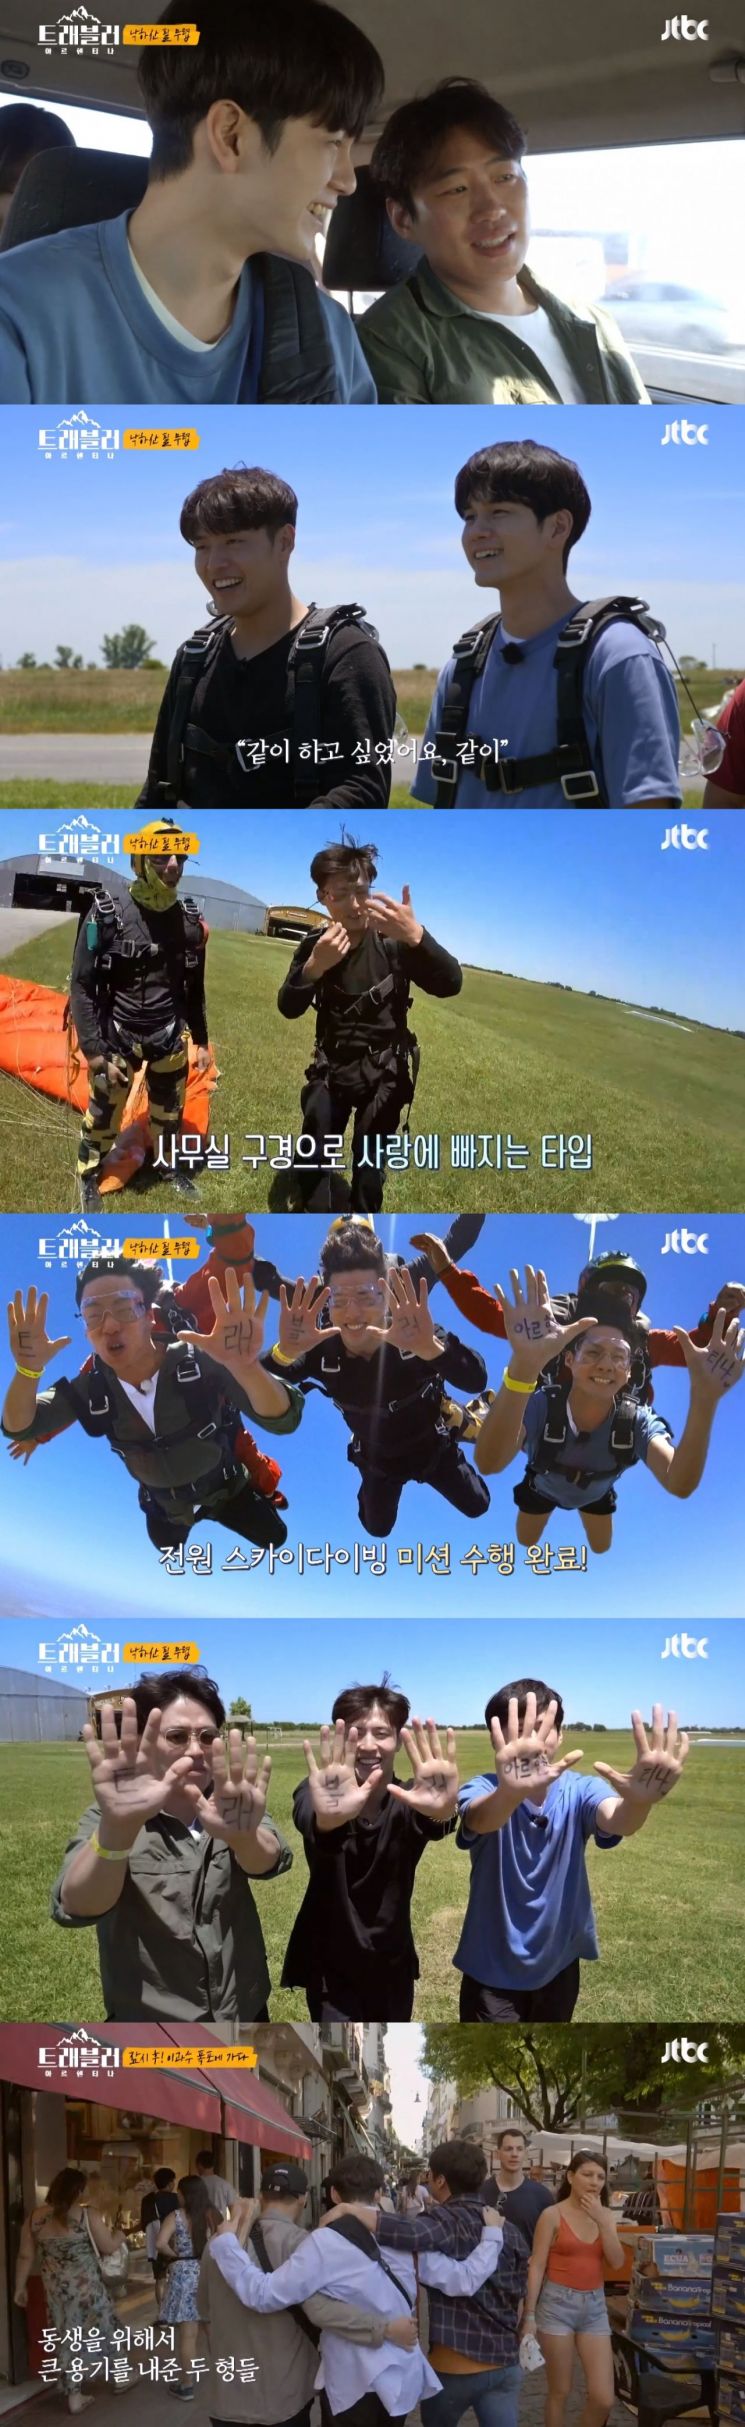 스카이다이빙에 성공한 옹성우의 모습 사진 =JTBC '트래블러' 방송 화면 캡쳐